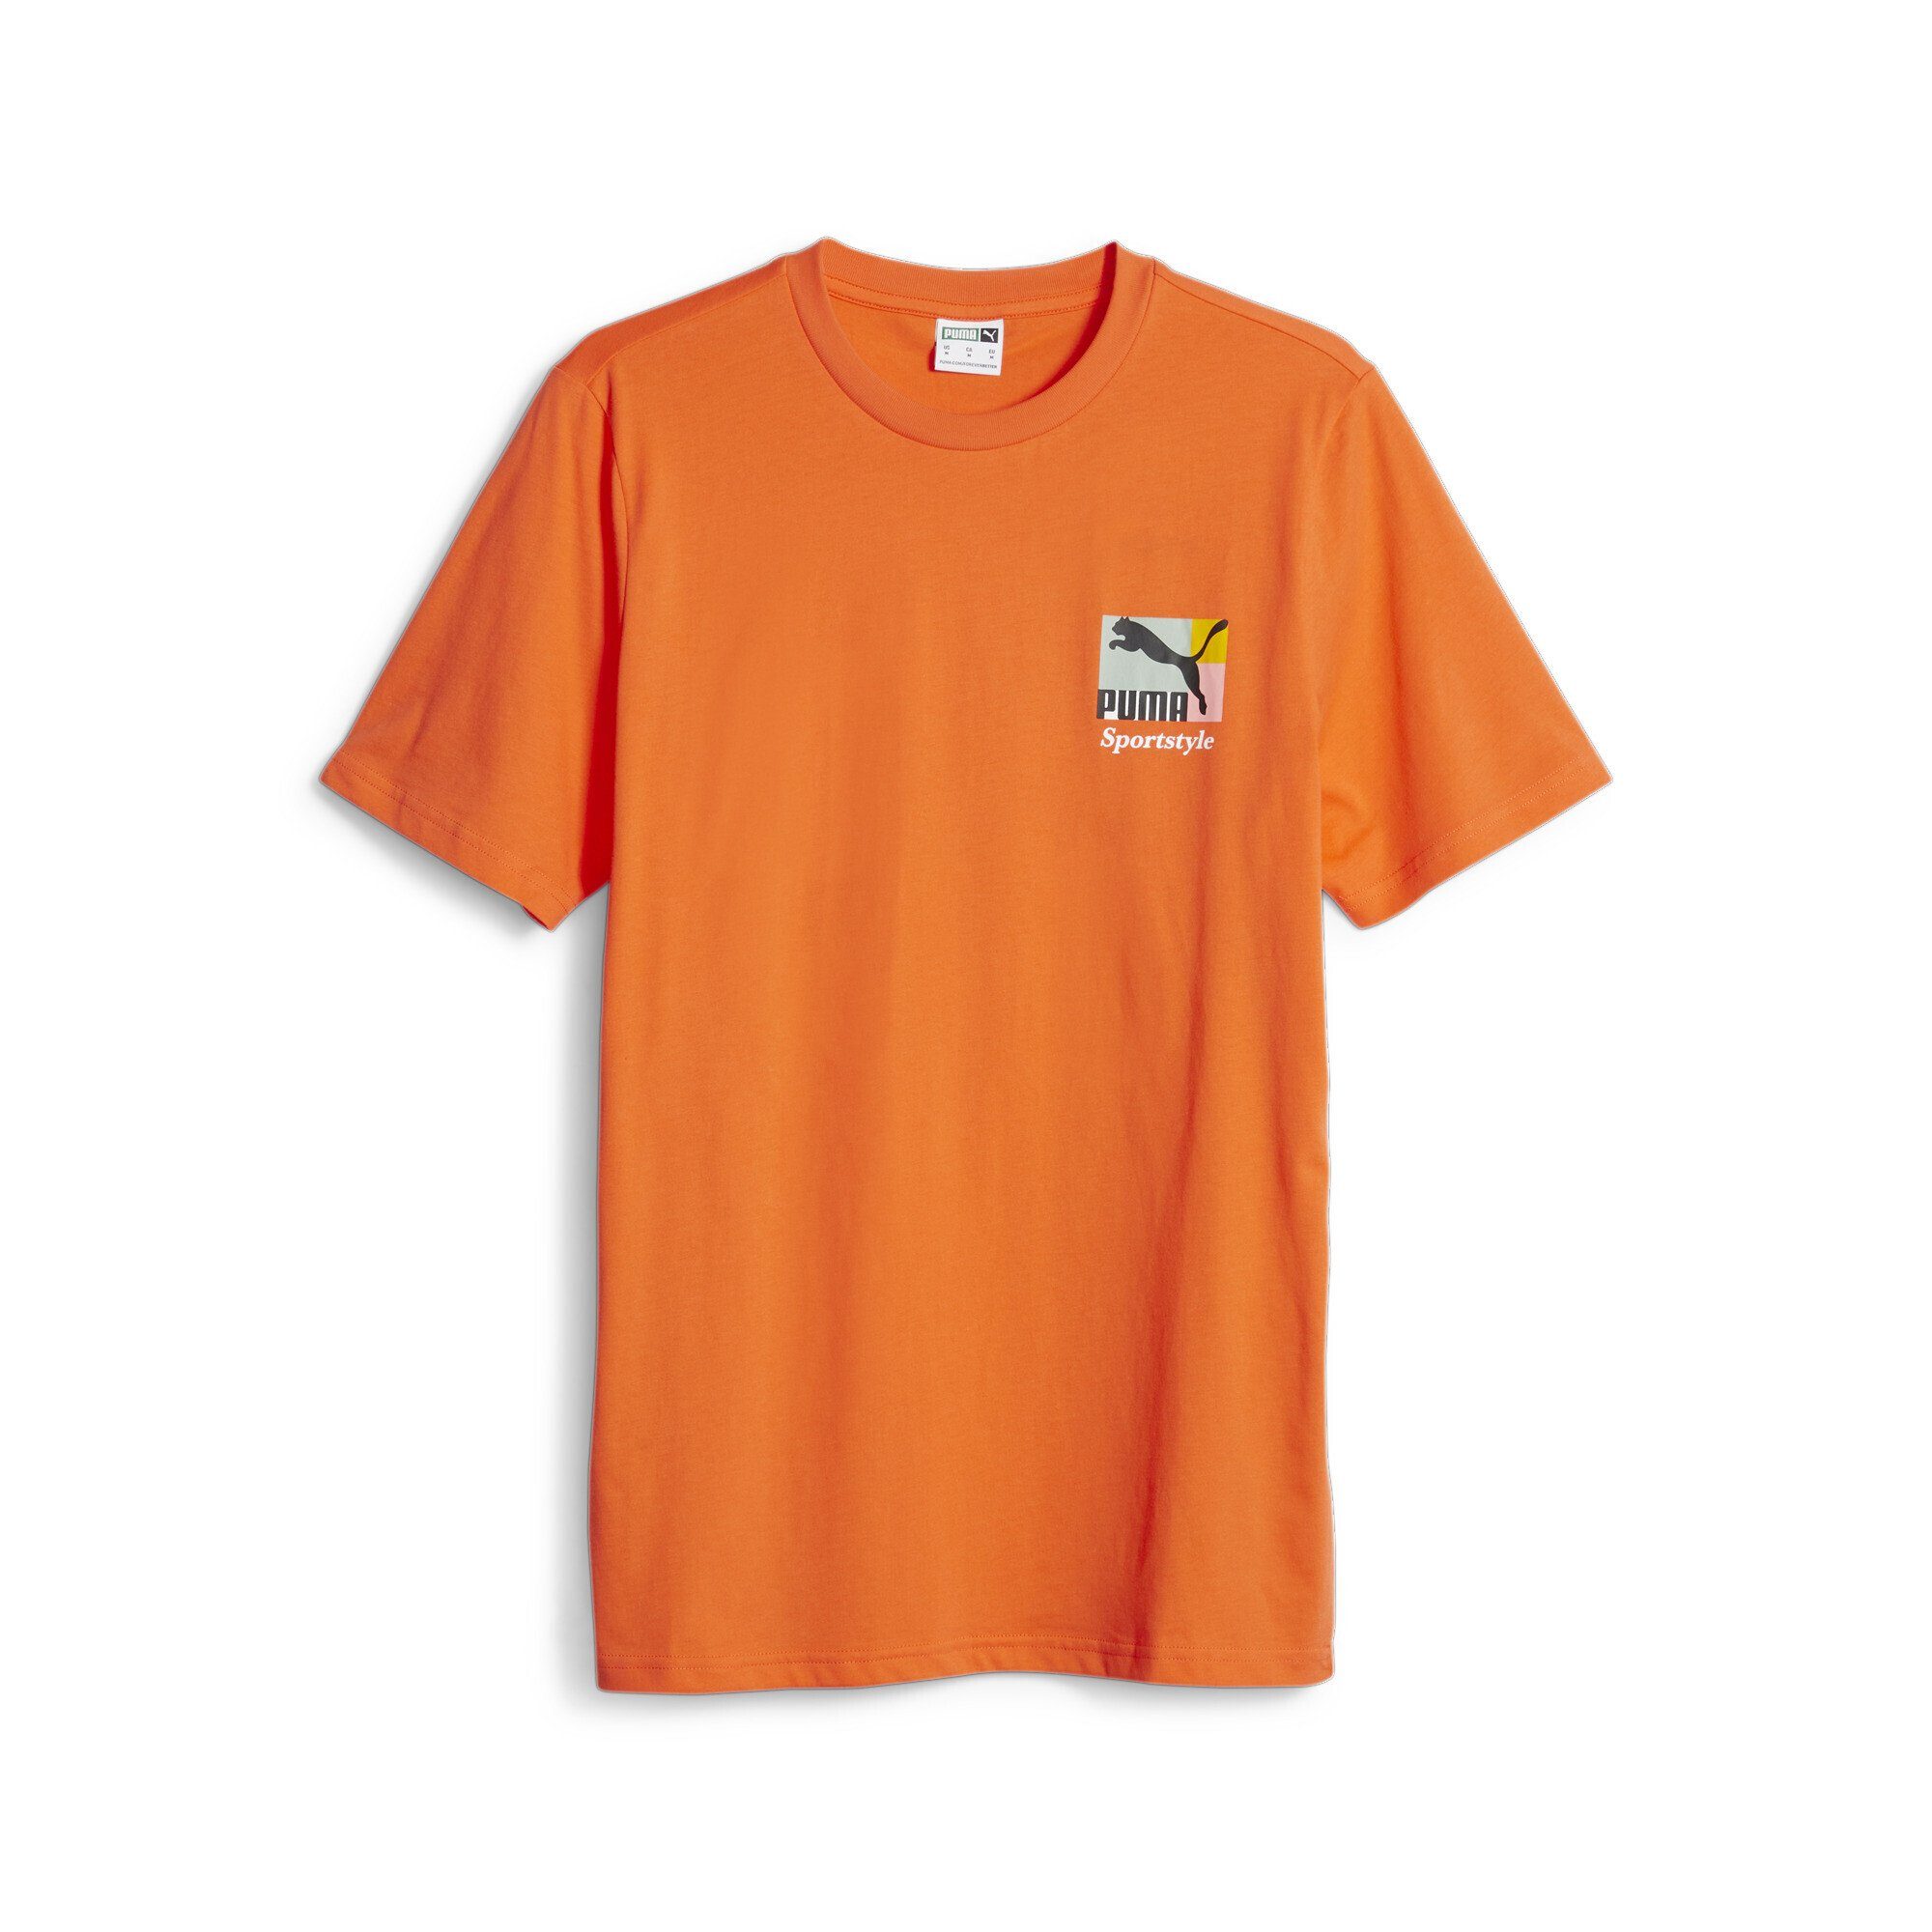 PUMA T-Shirt Classics Brand Love T-Shirt Herren, PUMA Sportstyle  Grafik-Print auf Vorder- und Rückseite